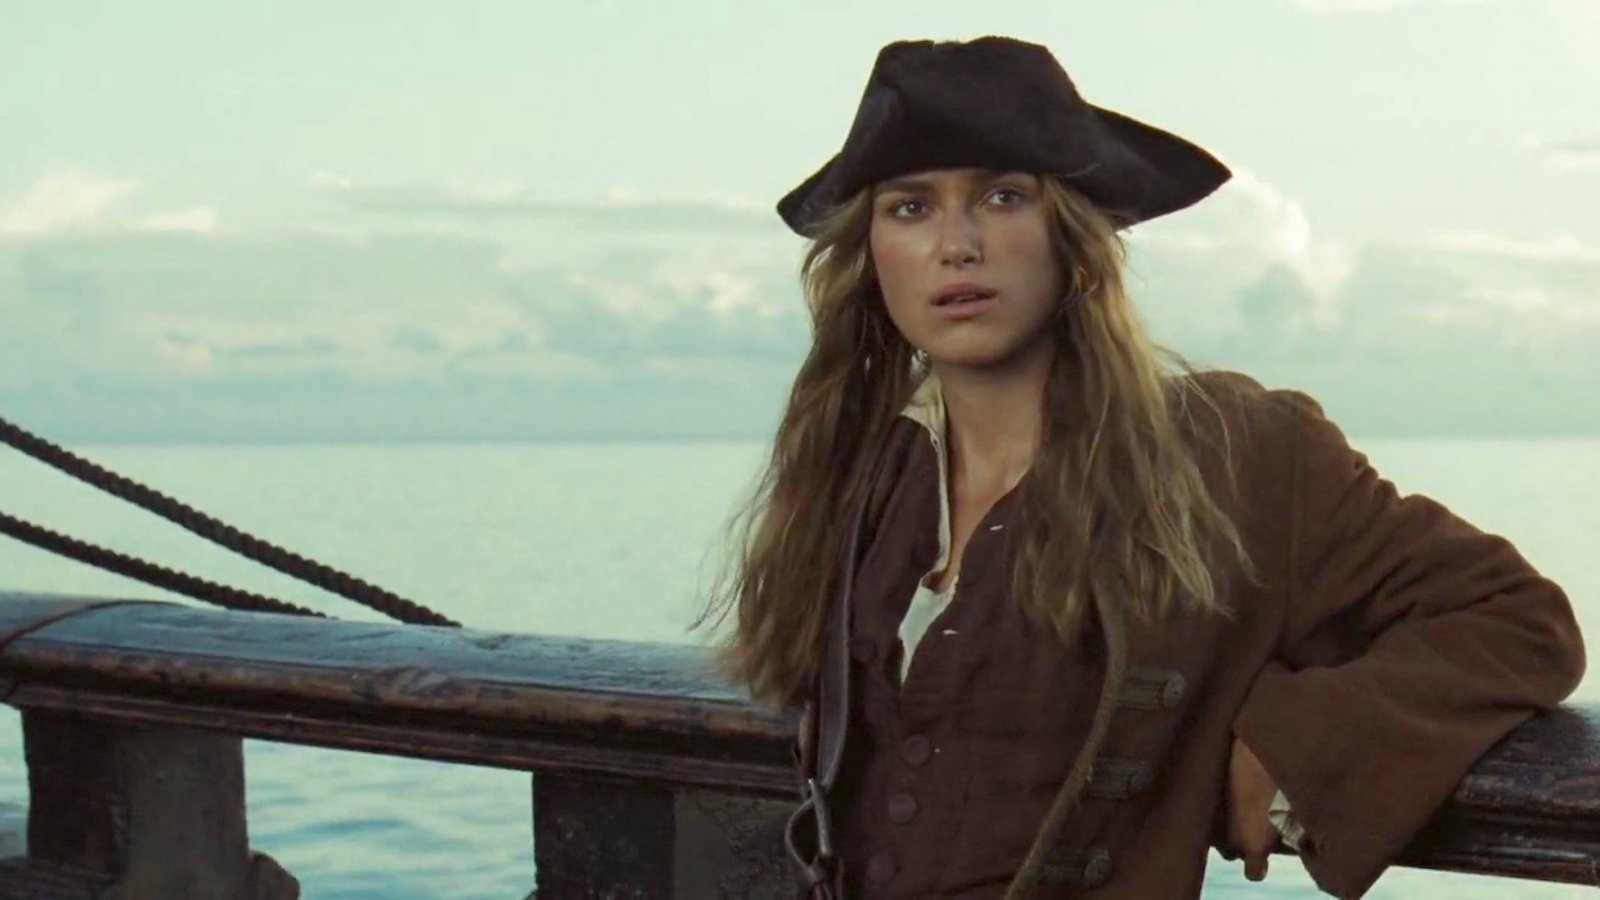 Pirati dei Caraibi, rivedremo Keira Knightley nel franchise? Ecco cosa ne pensa l'attrice